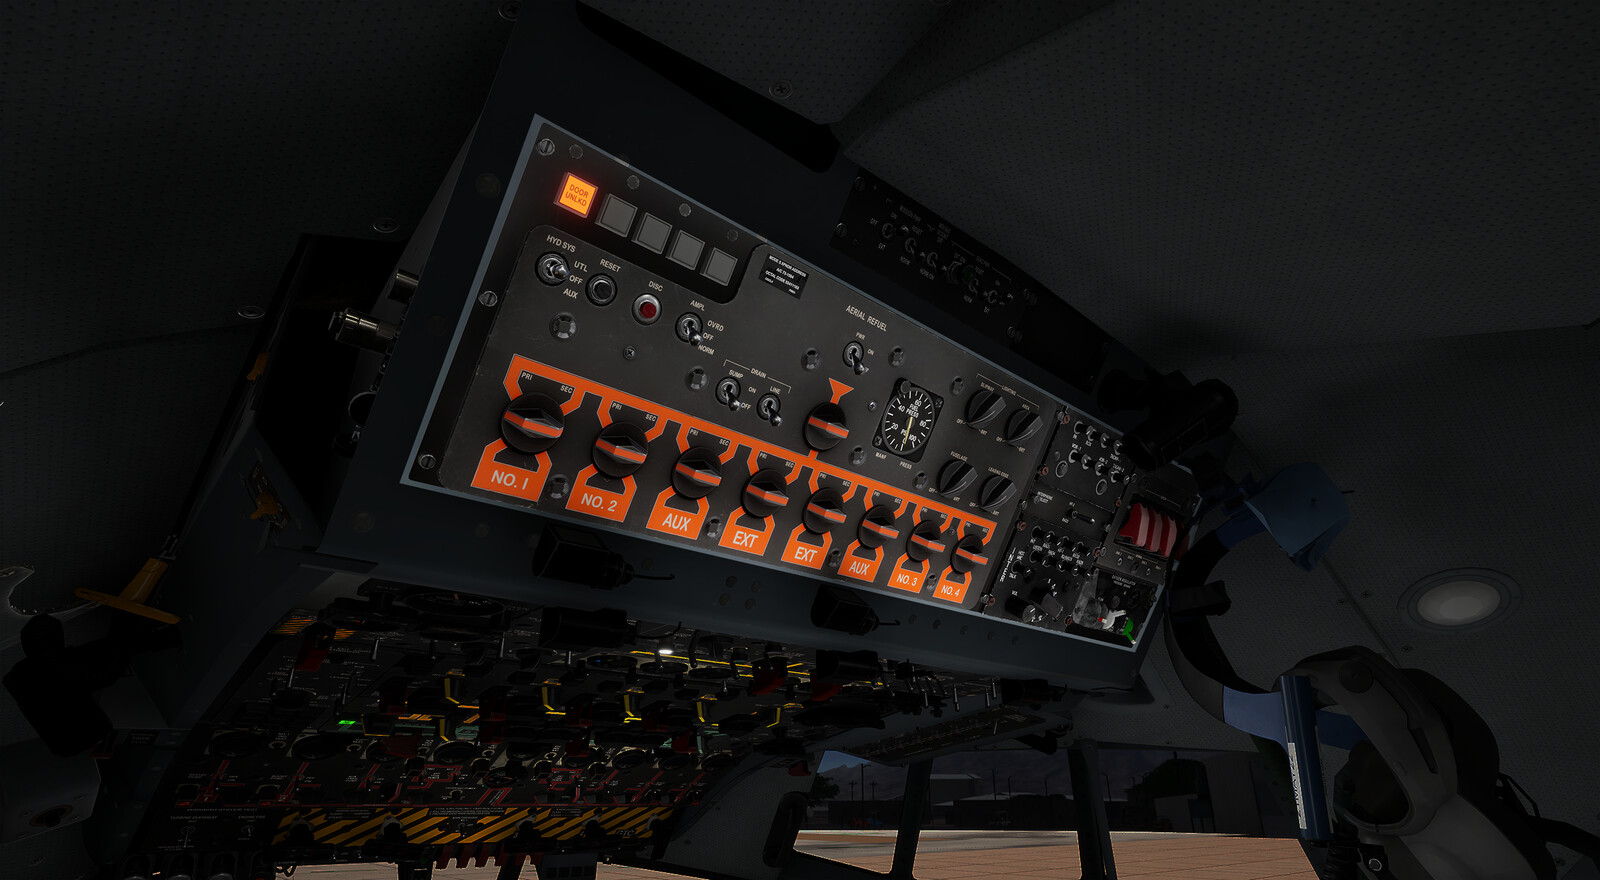 EC-130 top flight deck panel